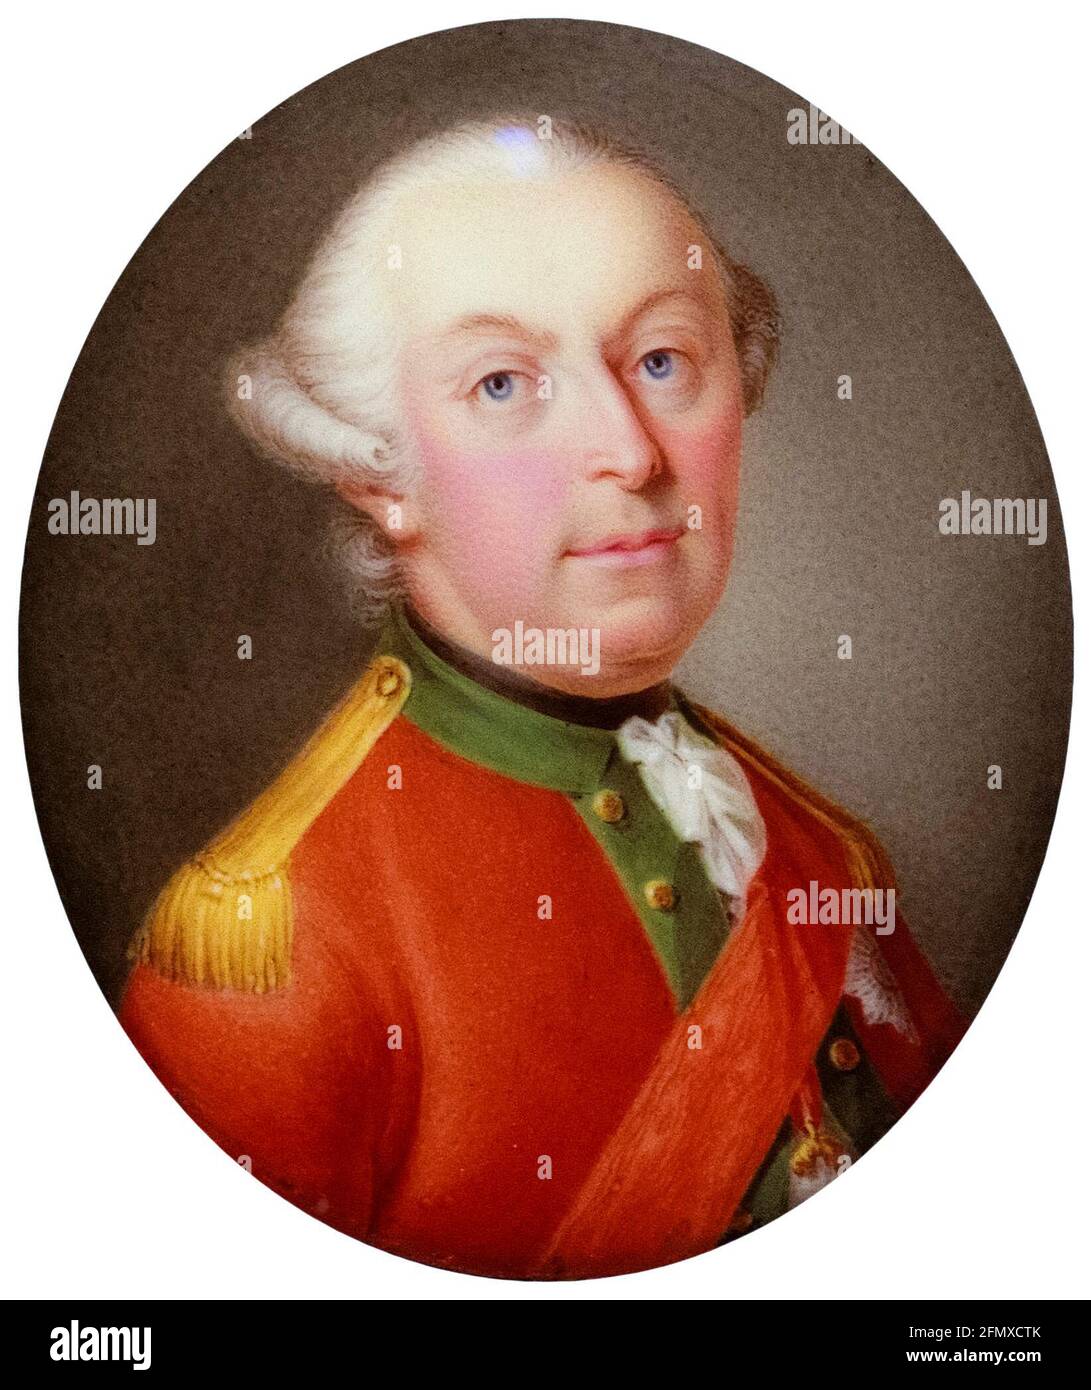 Giuseppe II (1741–1790), Sacro Romano Imperatore, Arciduca d'Austria (1765-1790), ritratto in miniatura di Adam Ludwig d'Argent, intorno al 1780 Foto Stock